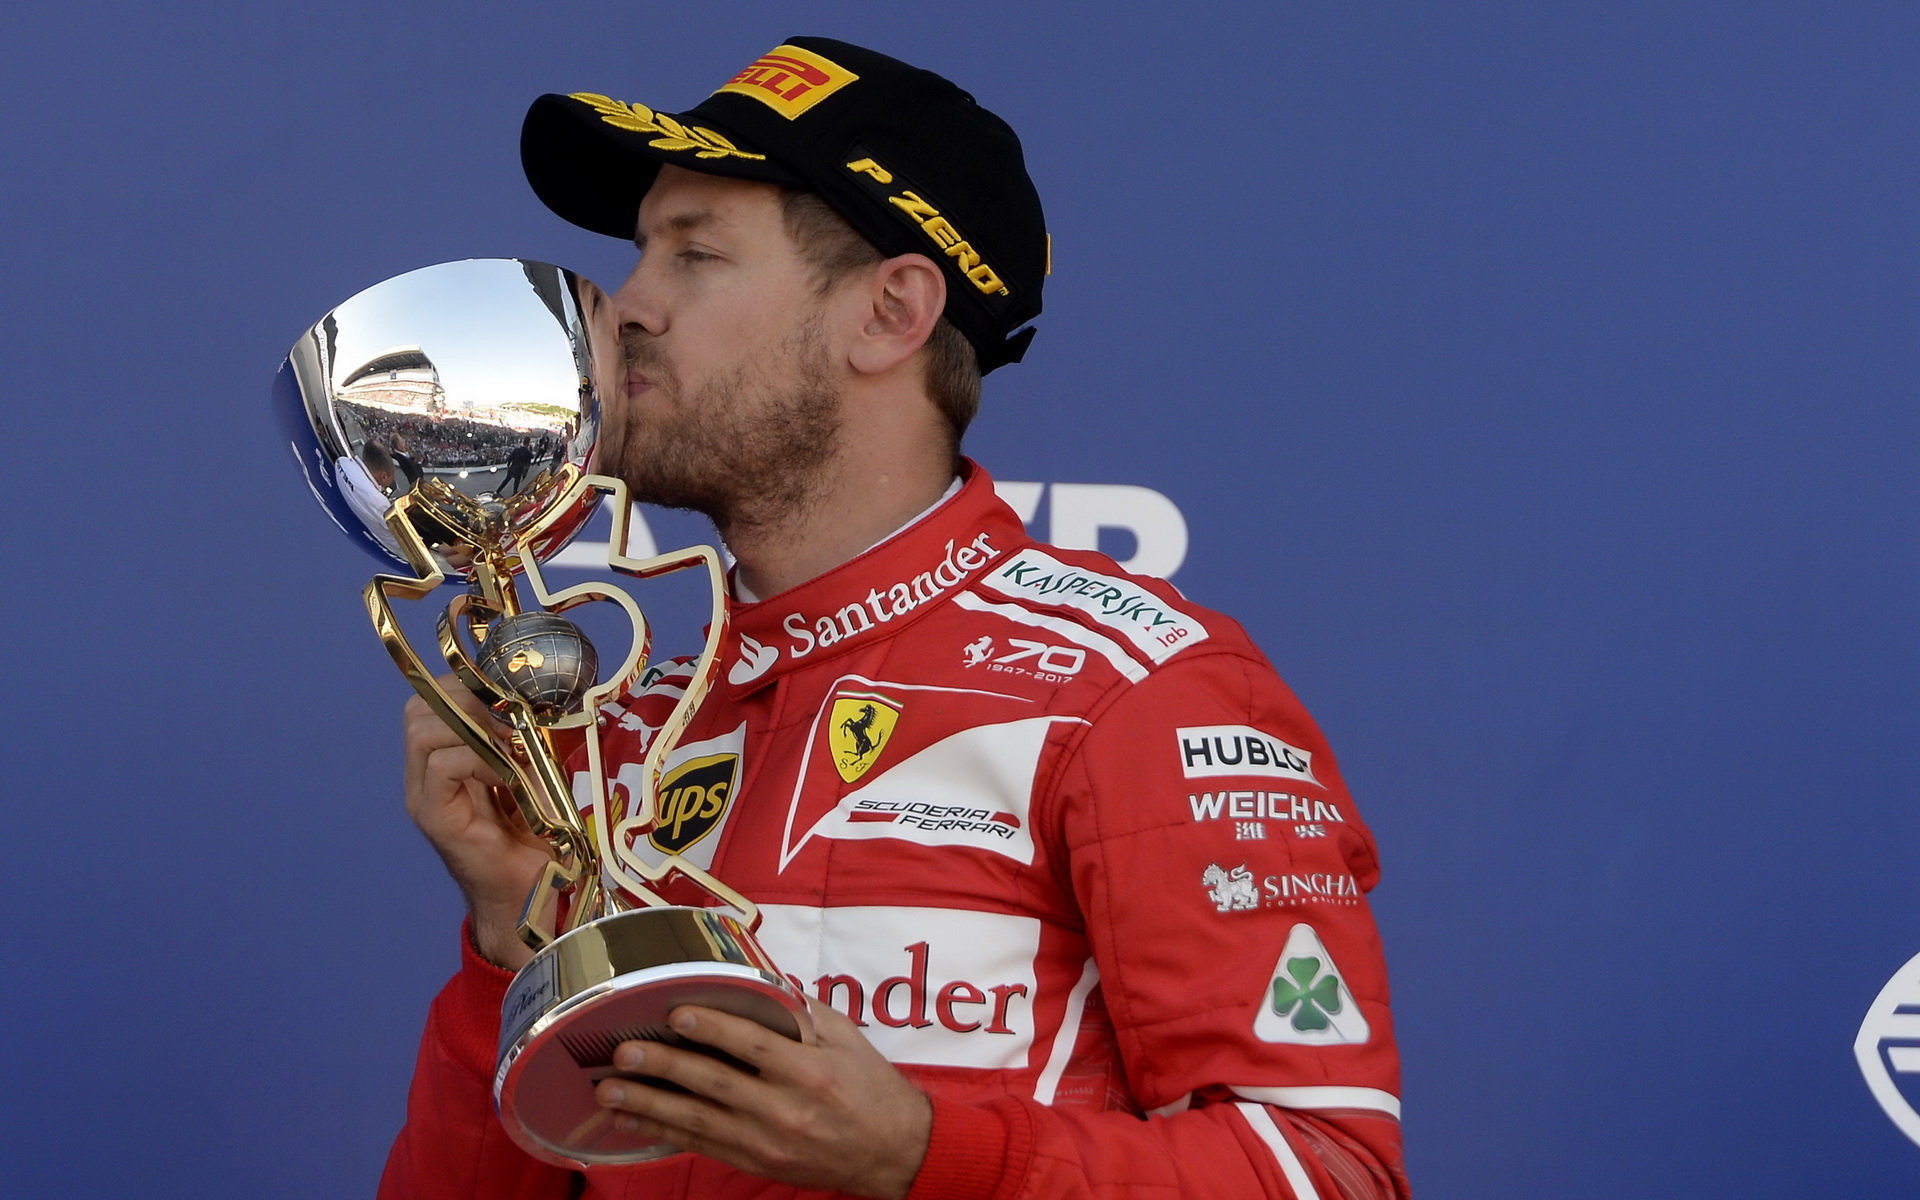 Sebastian Vettel se svou trofejí po závodě v Soči